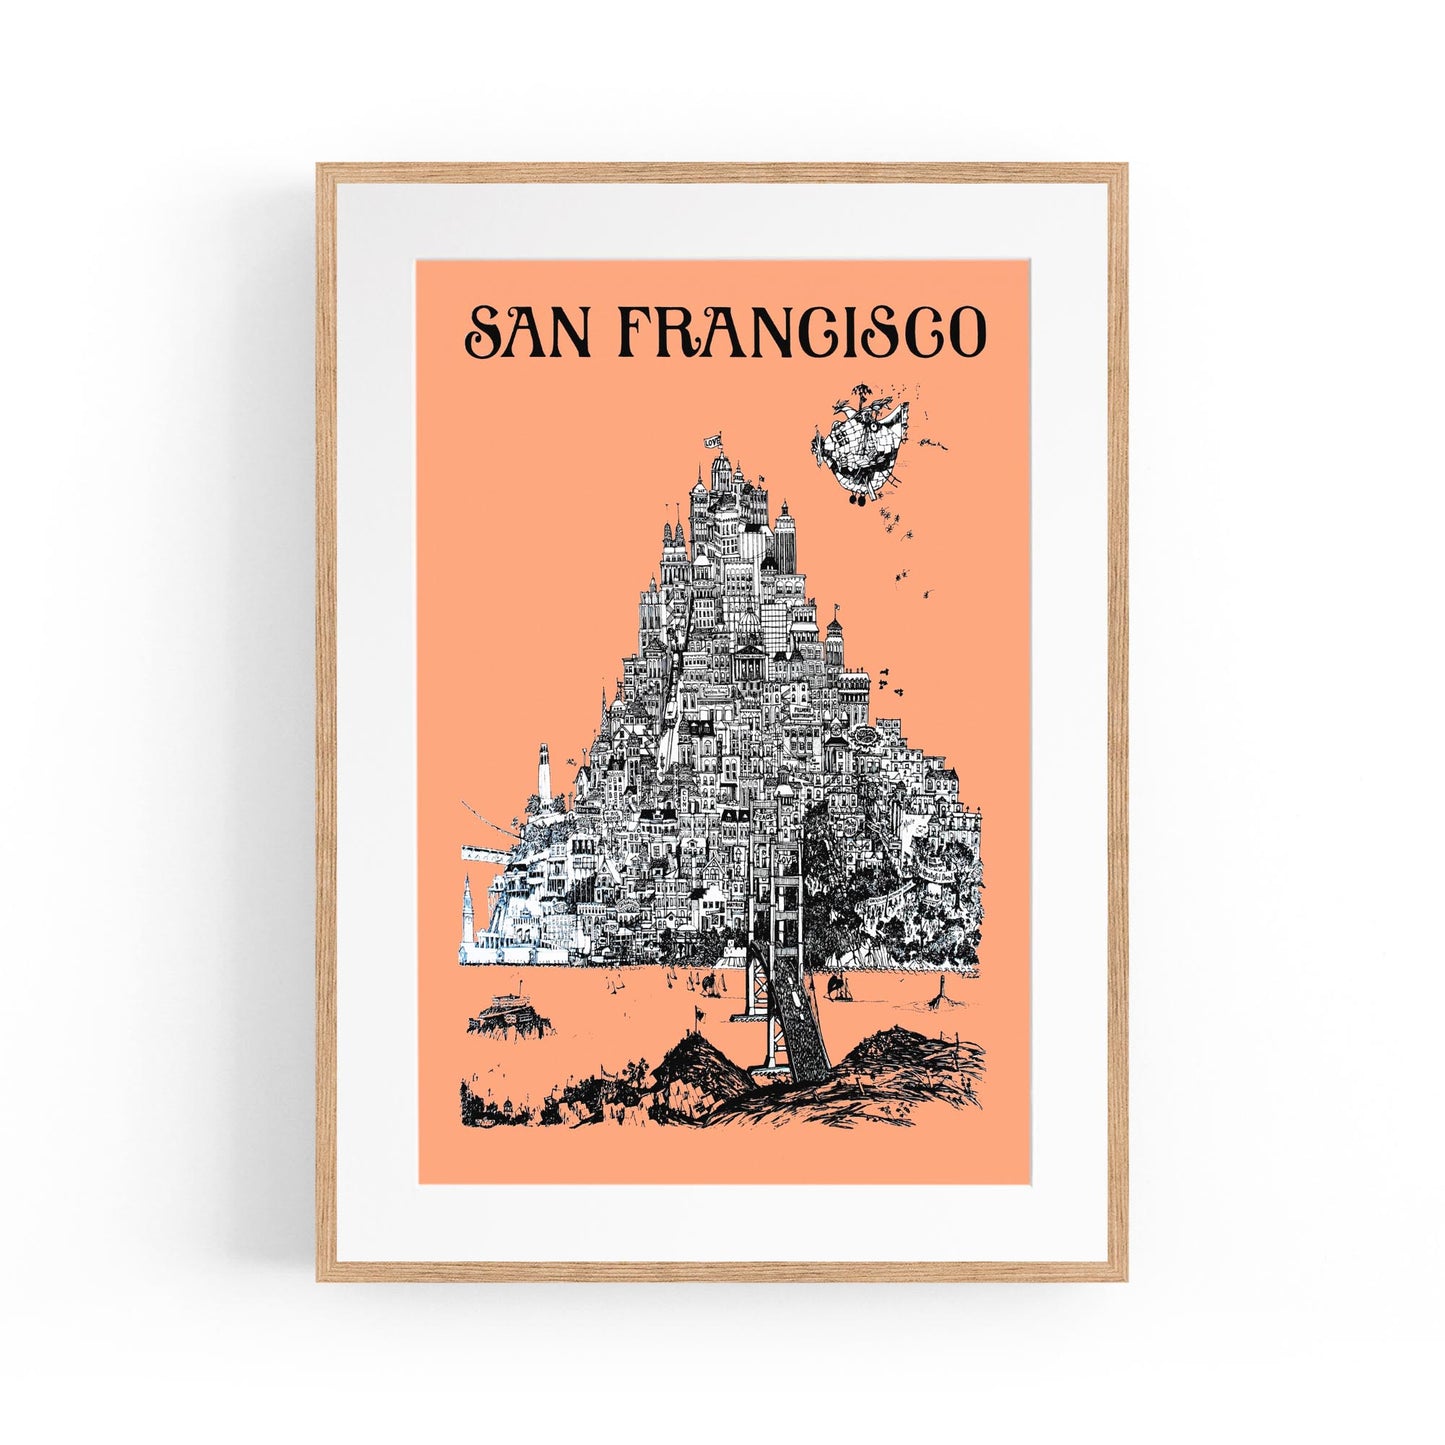 San Francisco, USA by David Schiller | Framed Vintage Travel Poster